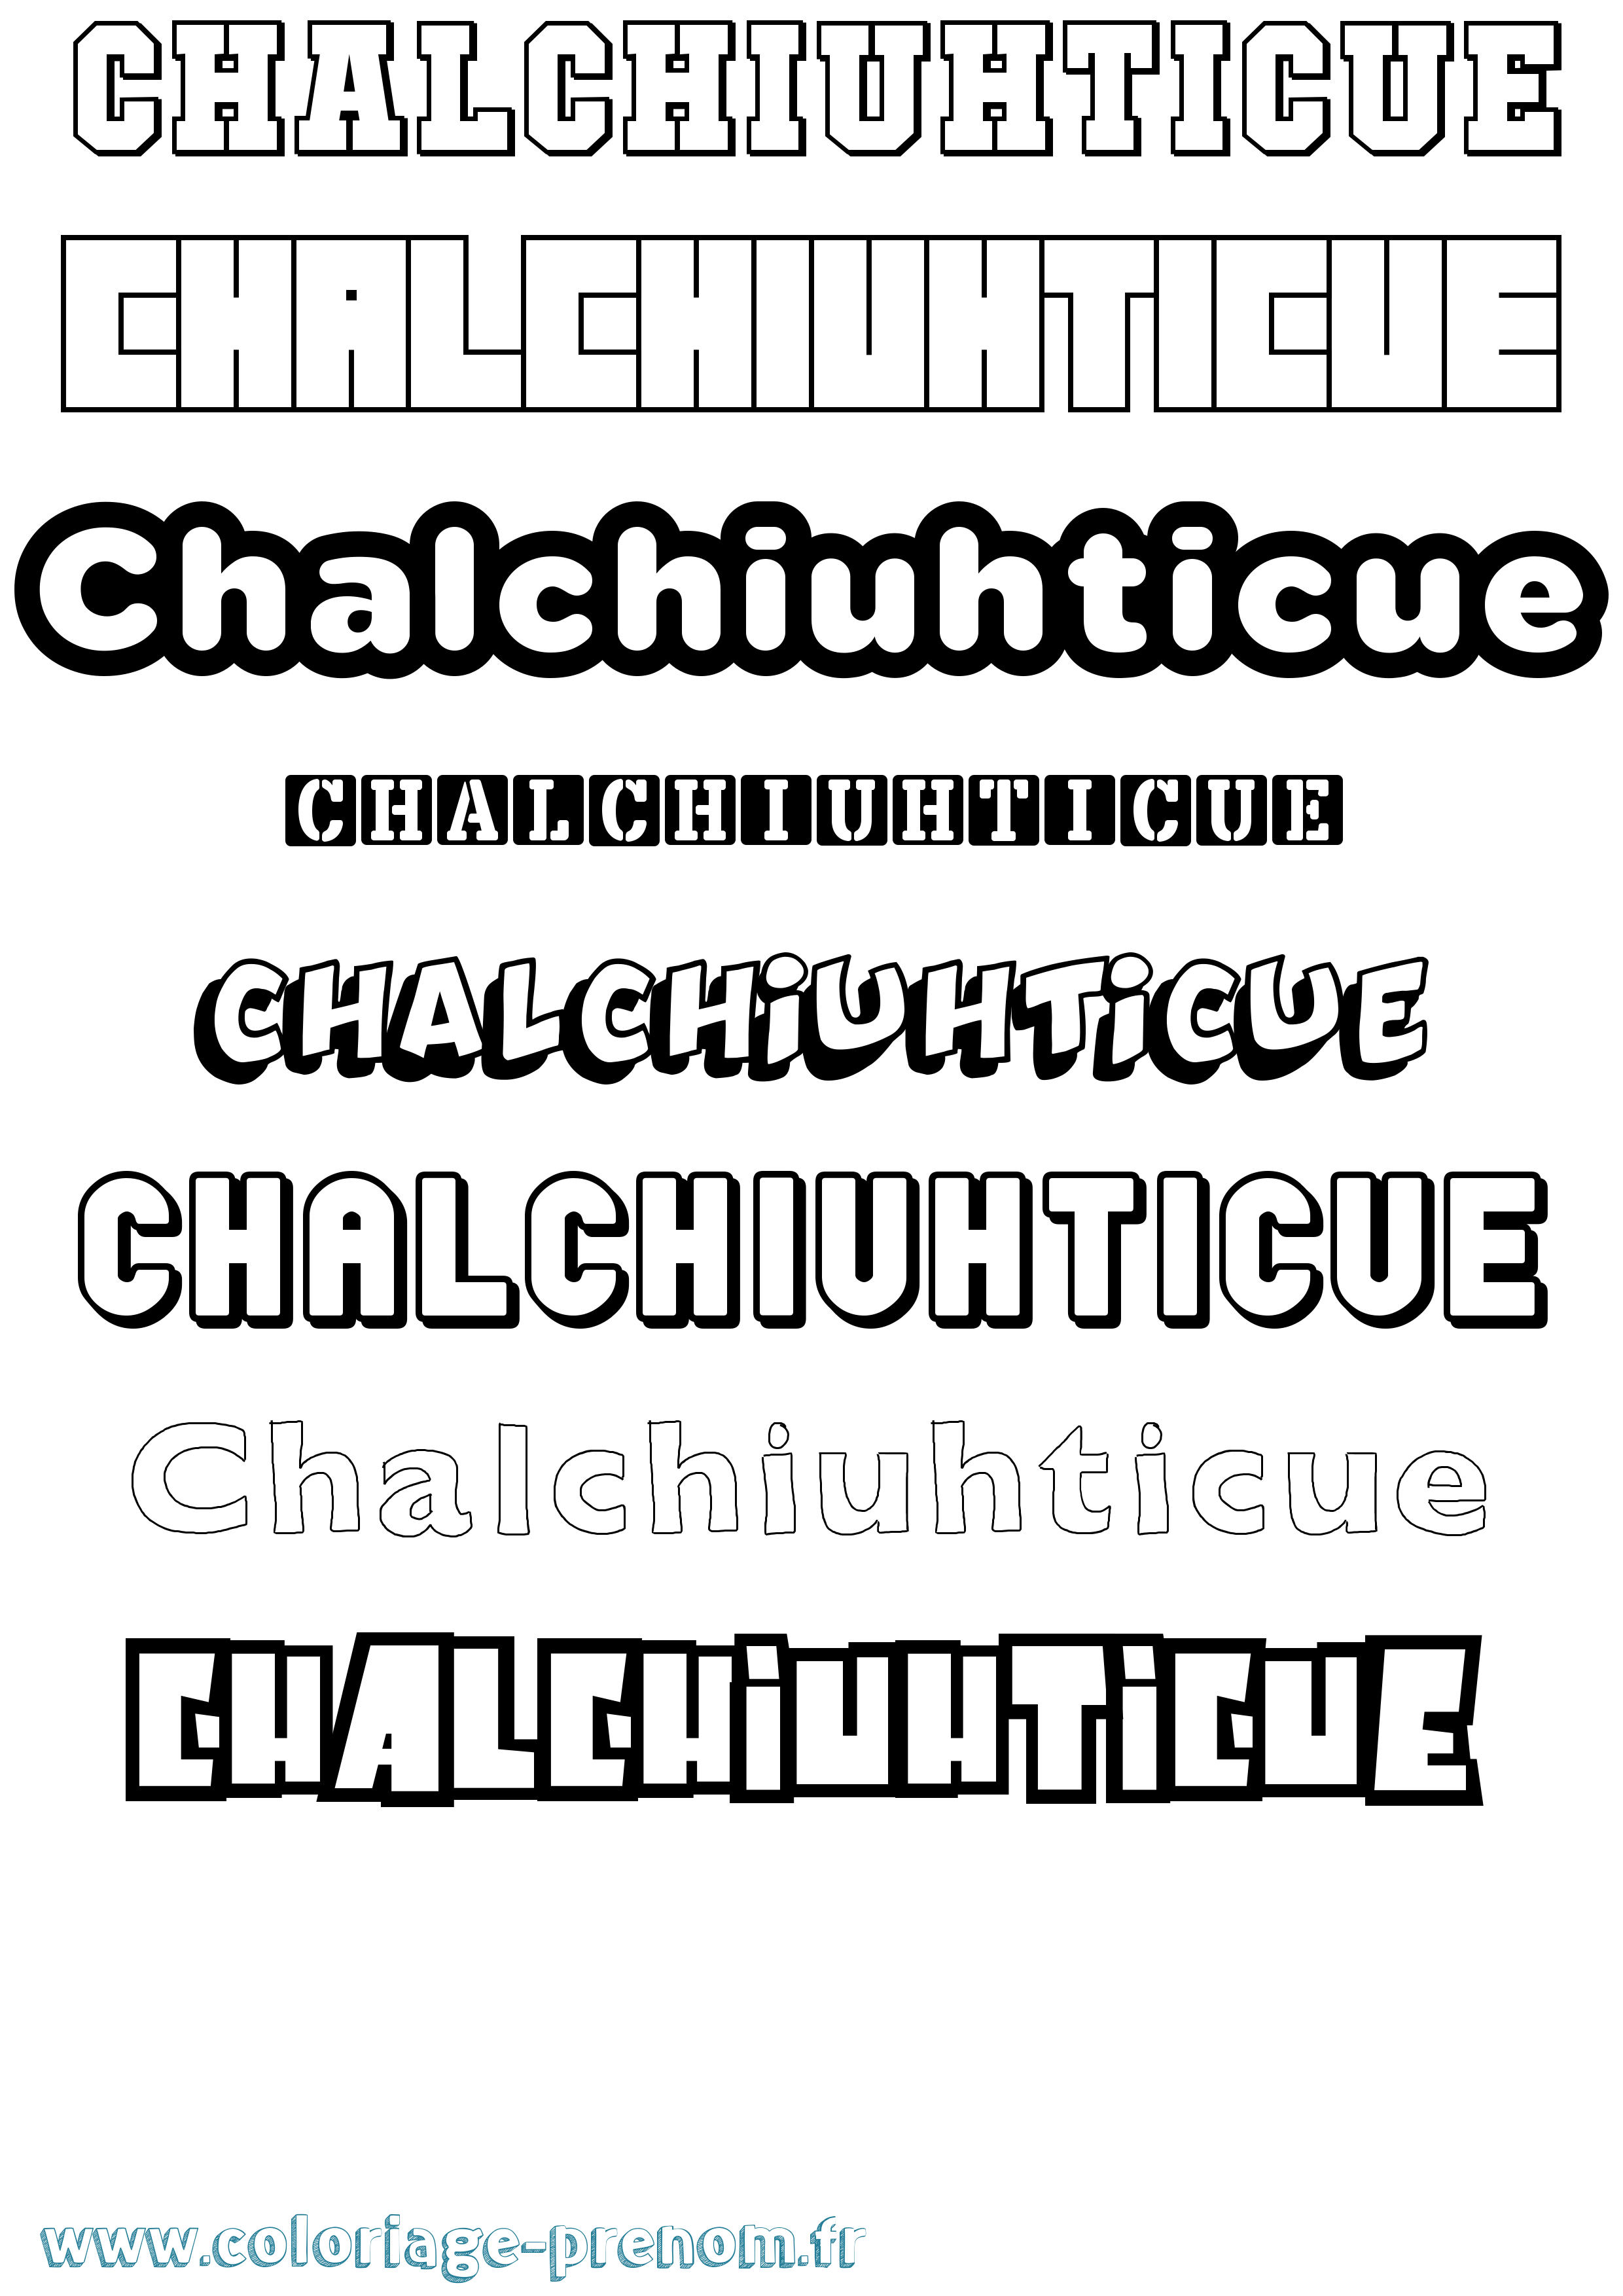 Coloriage prénom Chalchiuhticue Simple